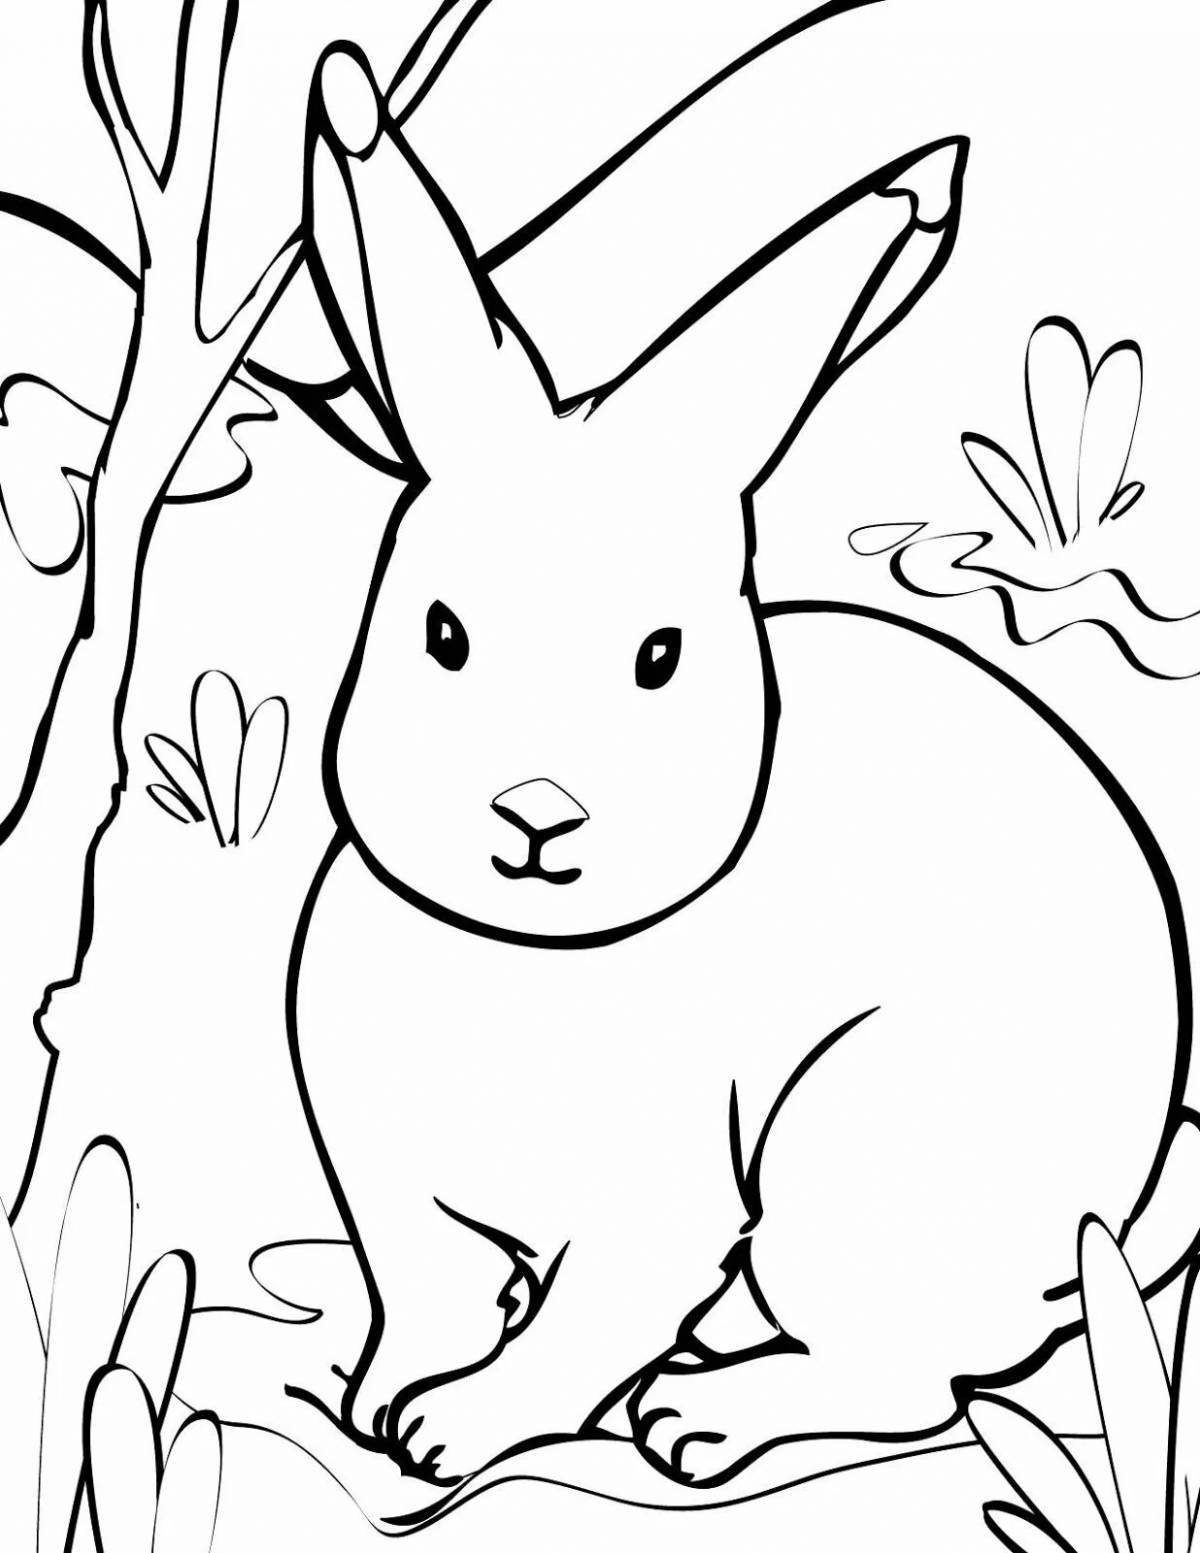 Красочная раскраска кролик в лесу